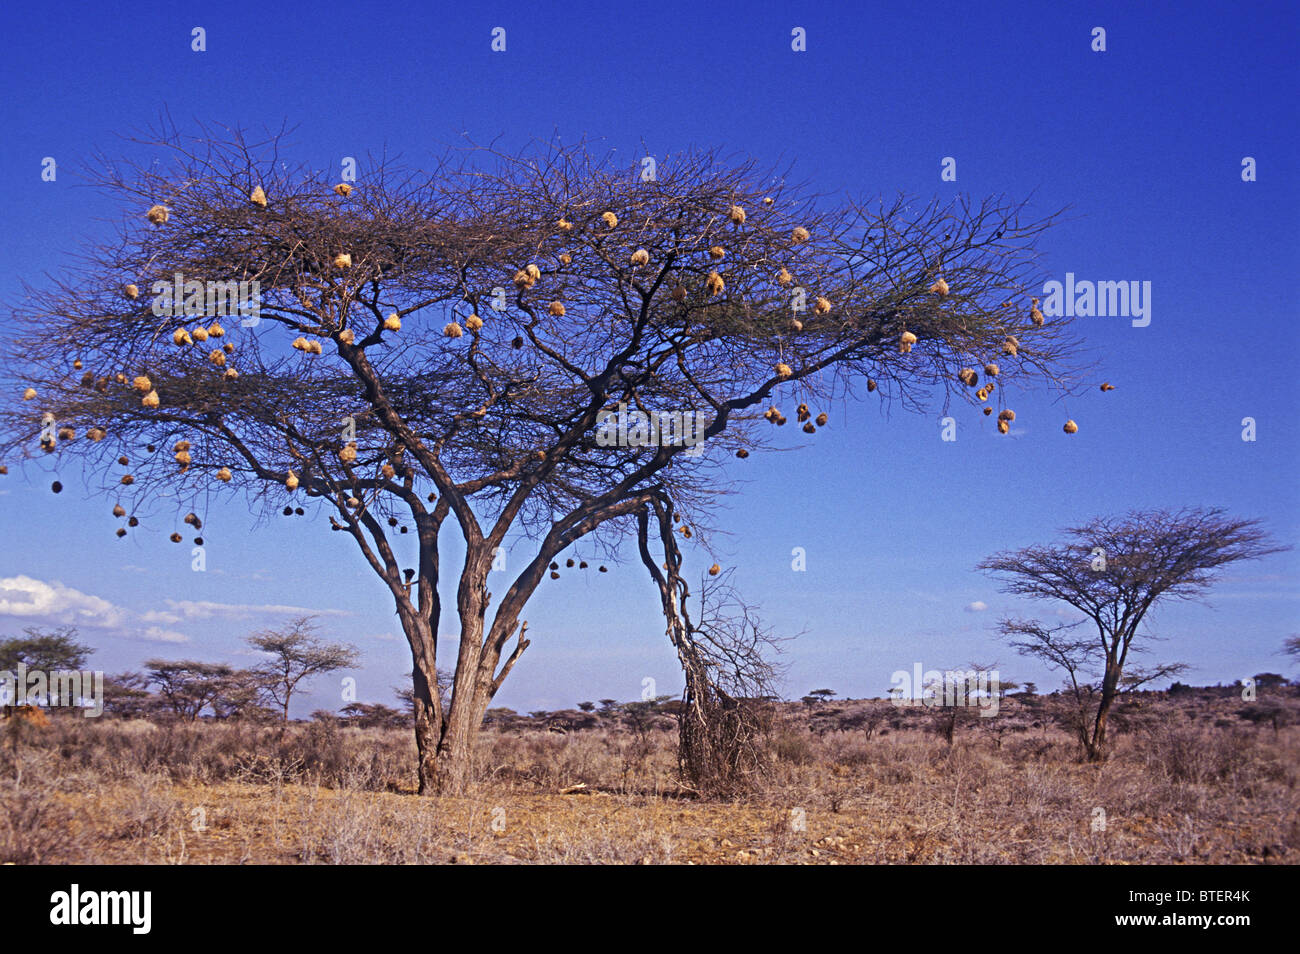 Acacia tortilis arbre avec nids de tisserands de la réserve nationale de Samburu, Kenya Afrique de l'Est branches brisées les dégâts causés par les éléphants Banque D'Images